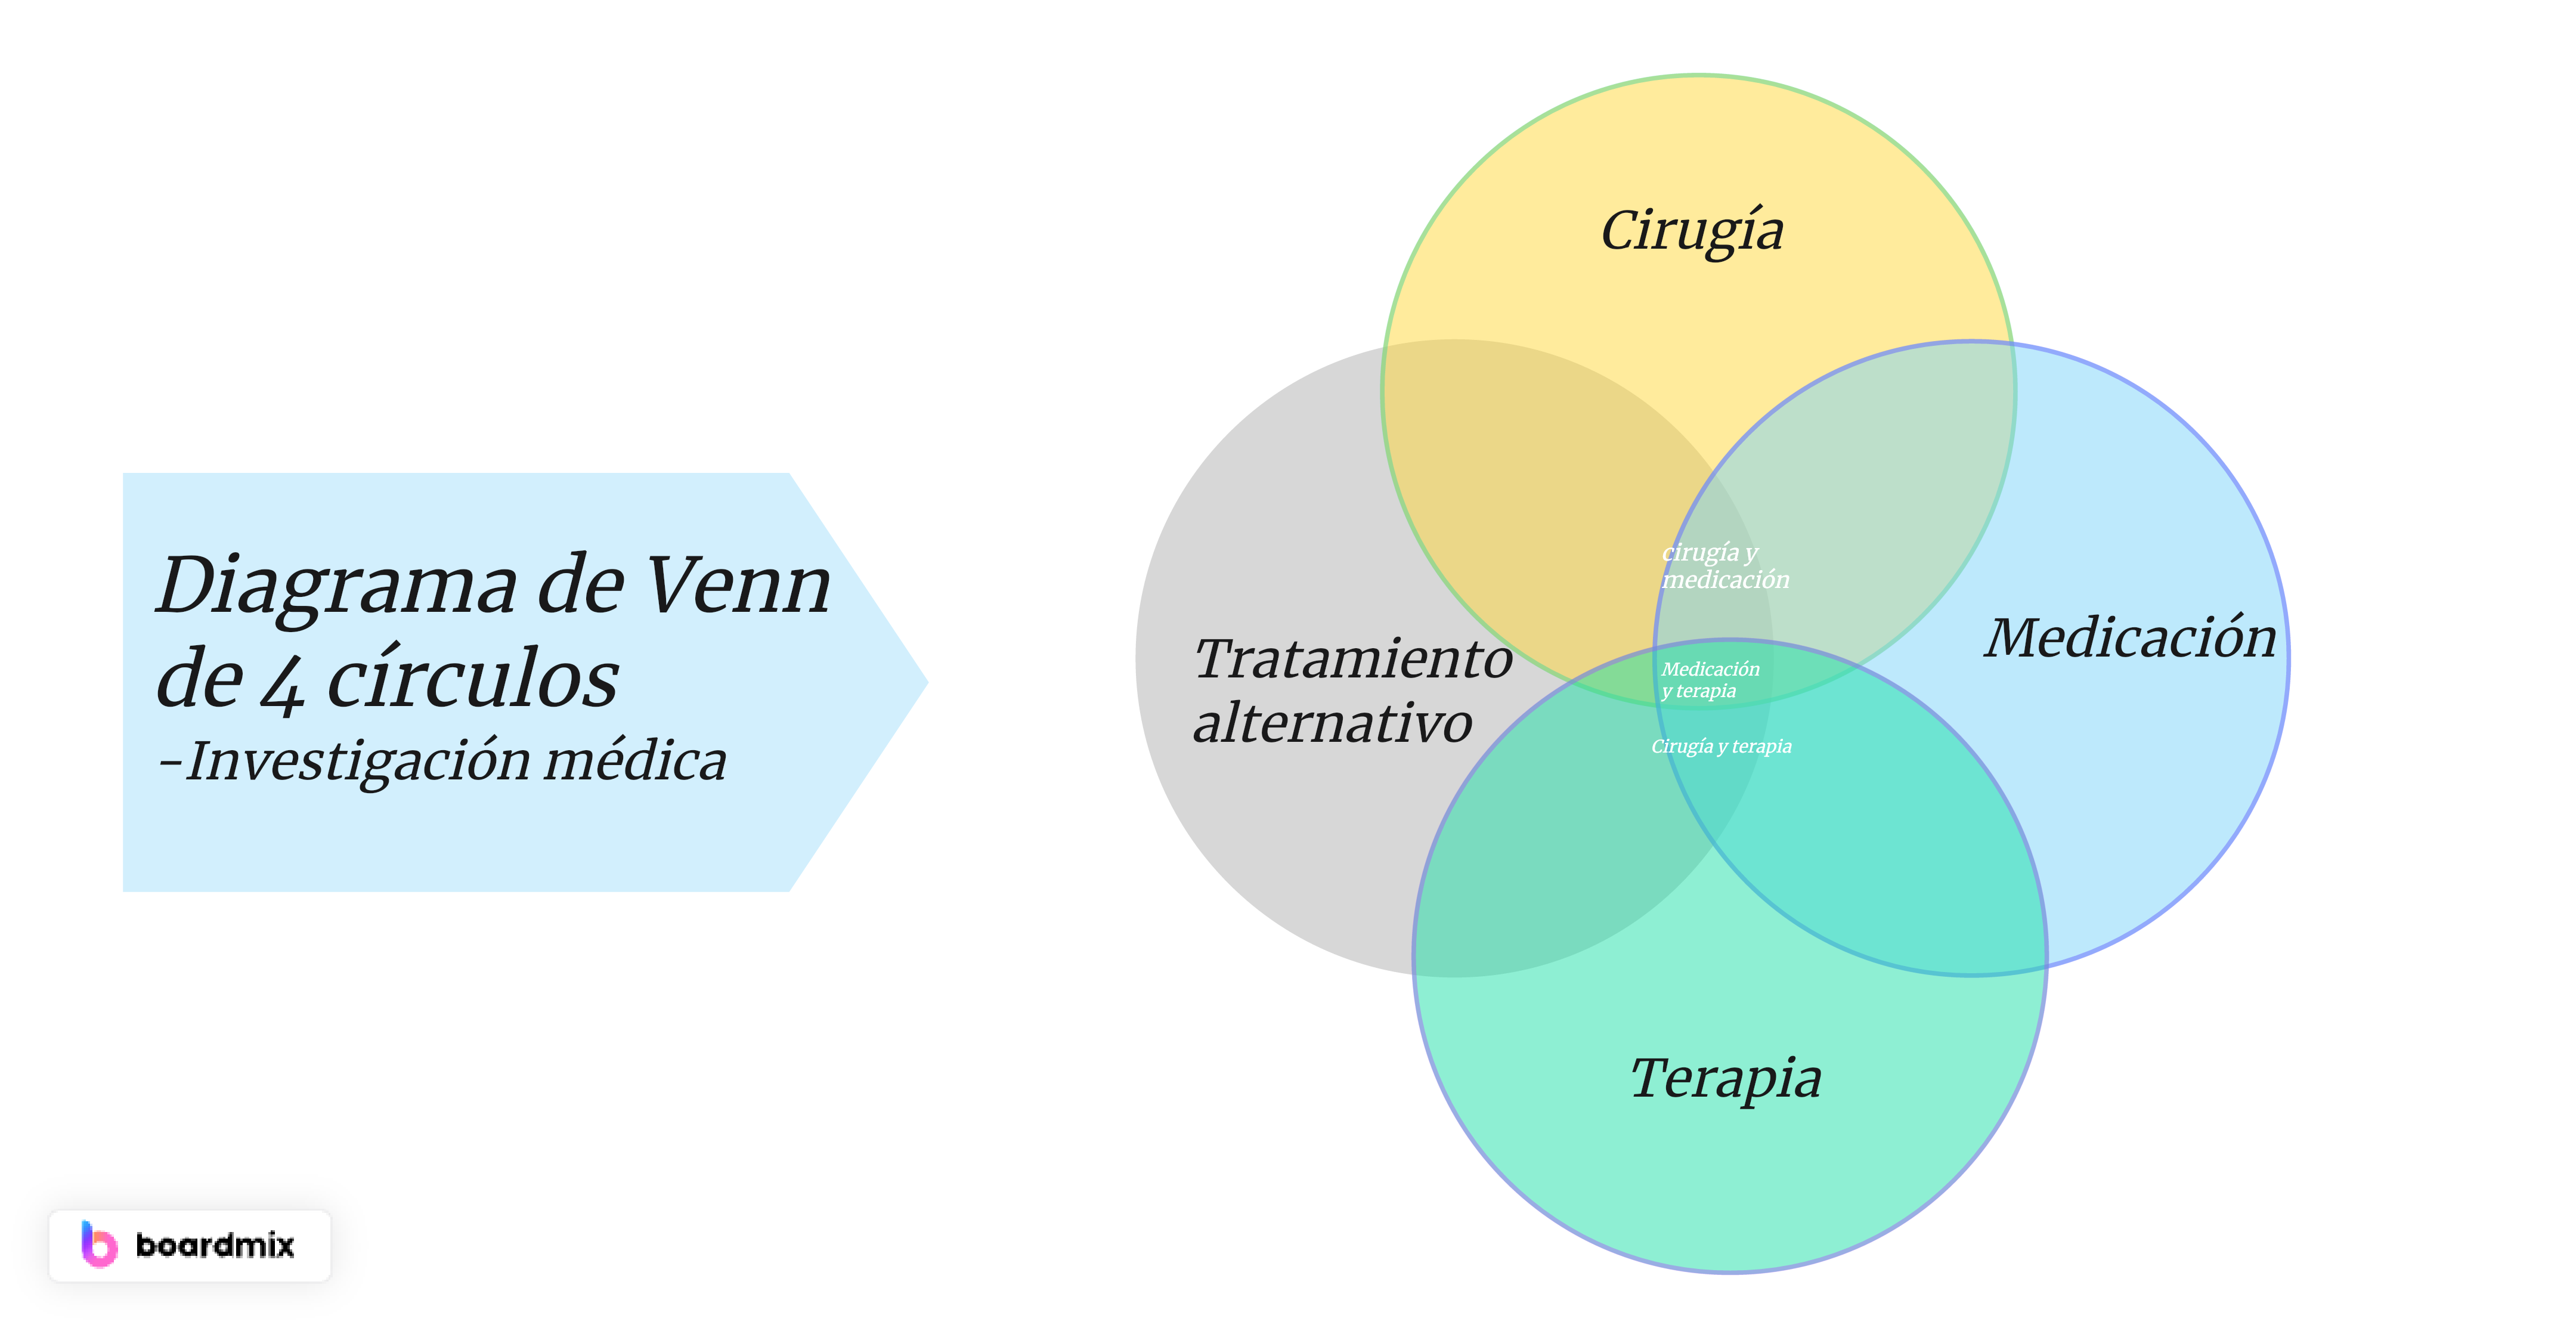 Diagrama de Venn de 4 círculos en investigación médica